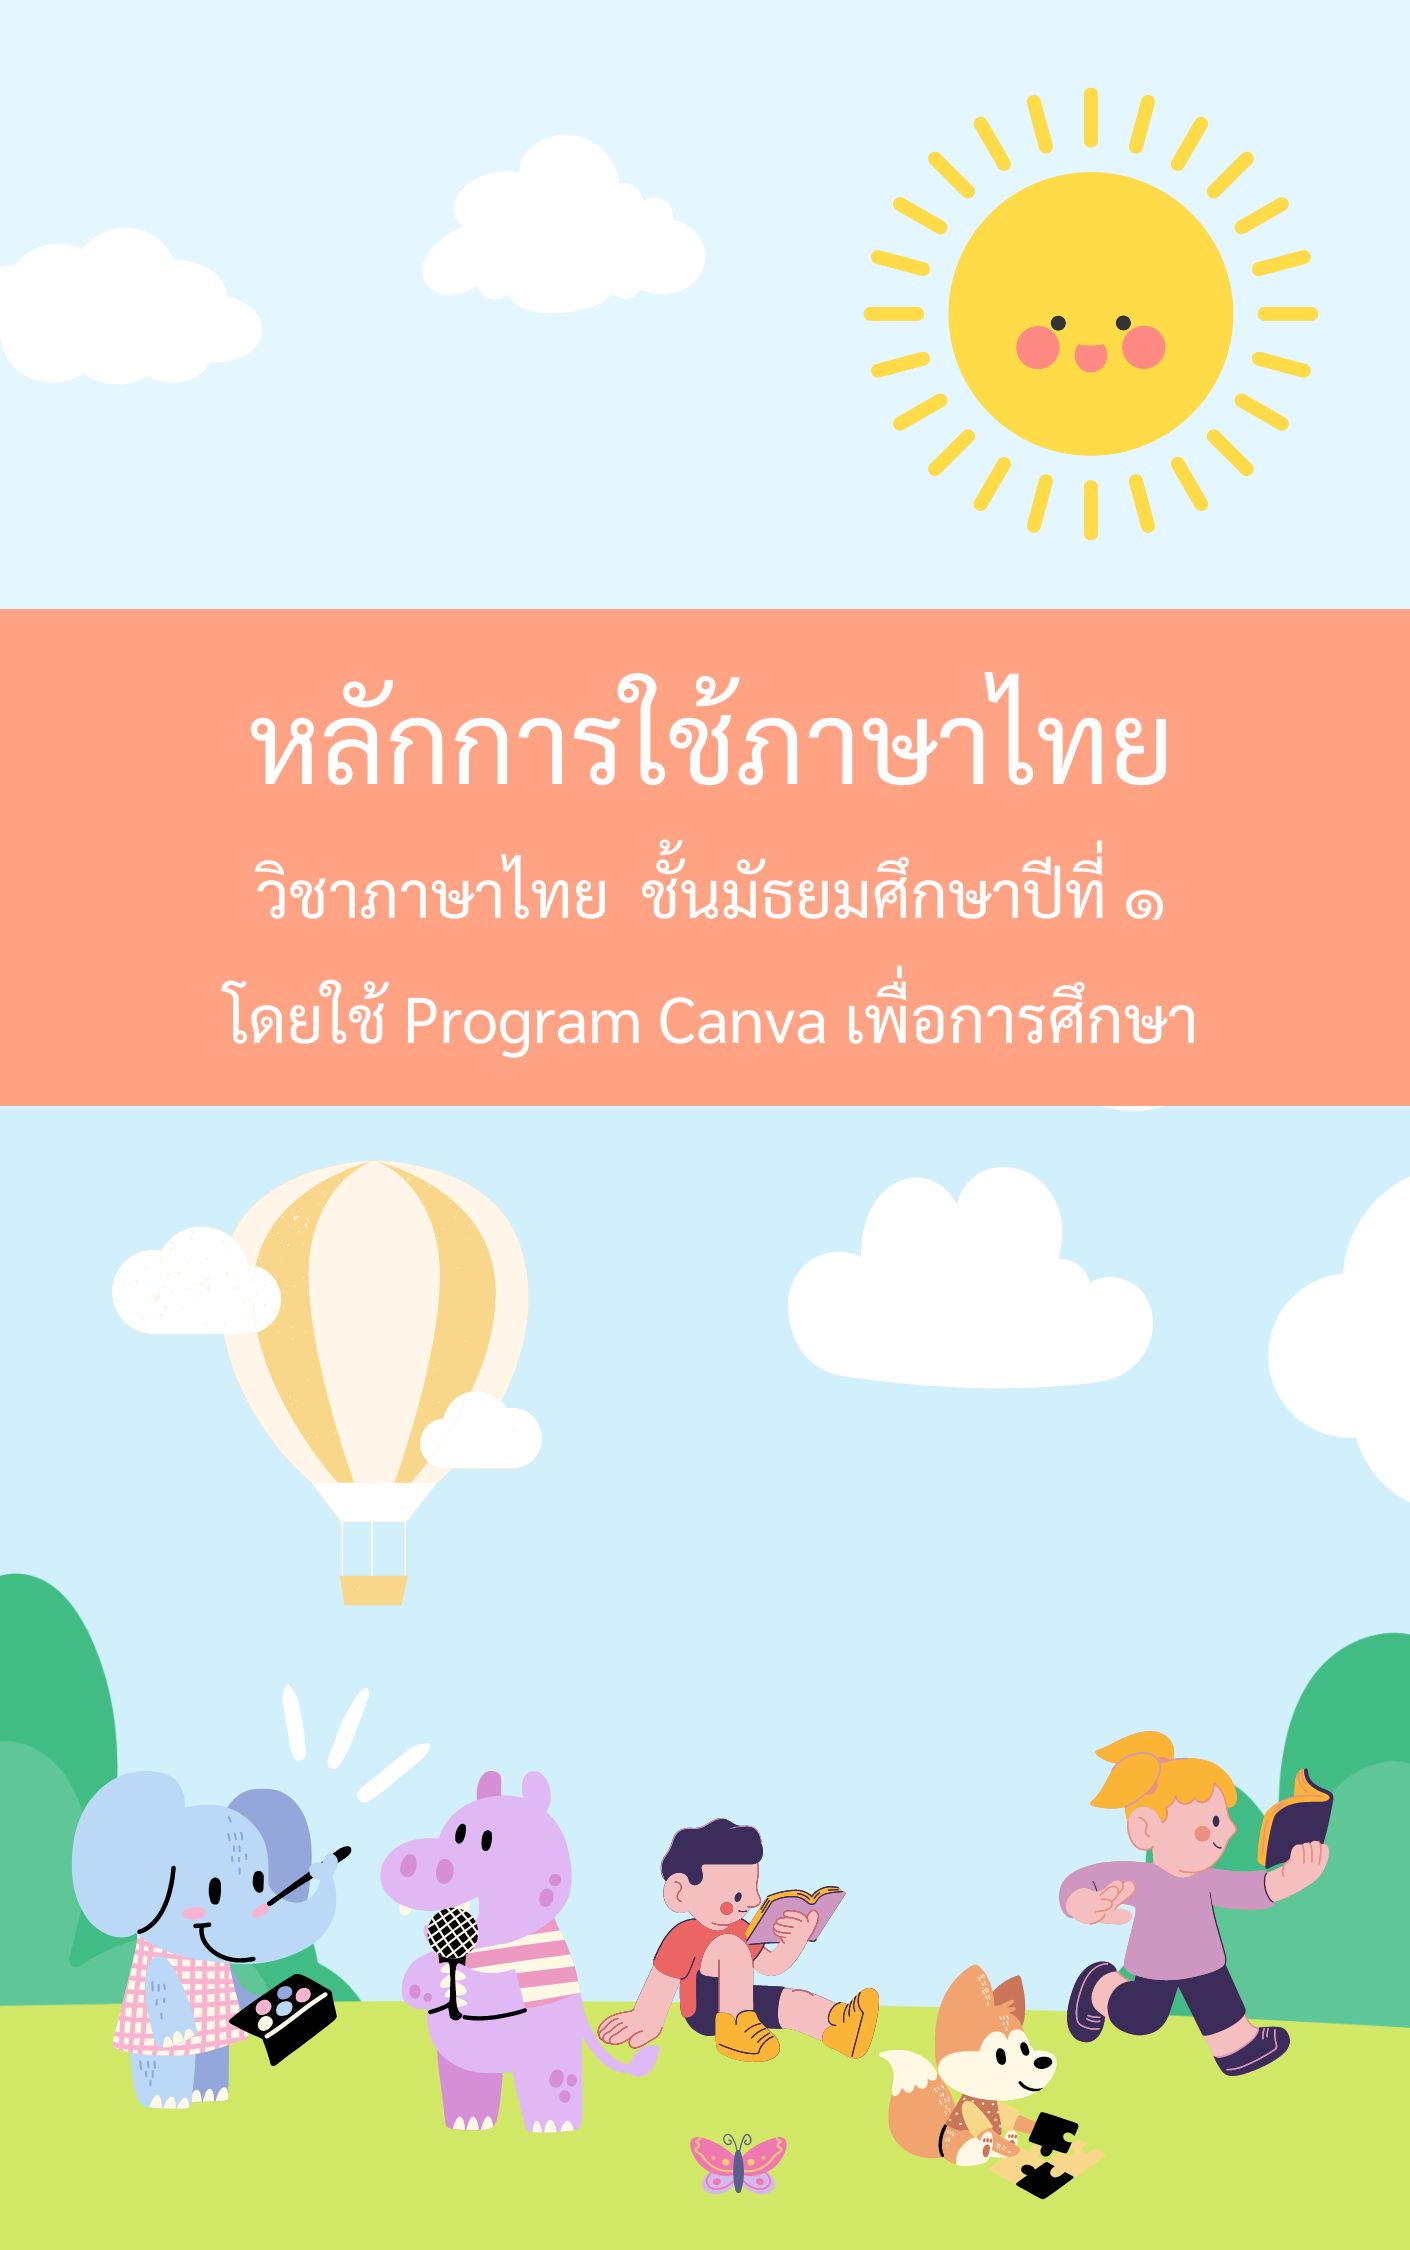 ภาพประกอบไอเดีย หลักการใช้ภาษาไทย โดย Program Canva เพื่อการศึกษา